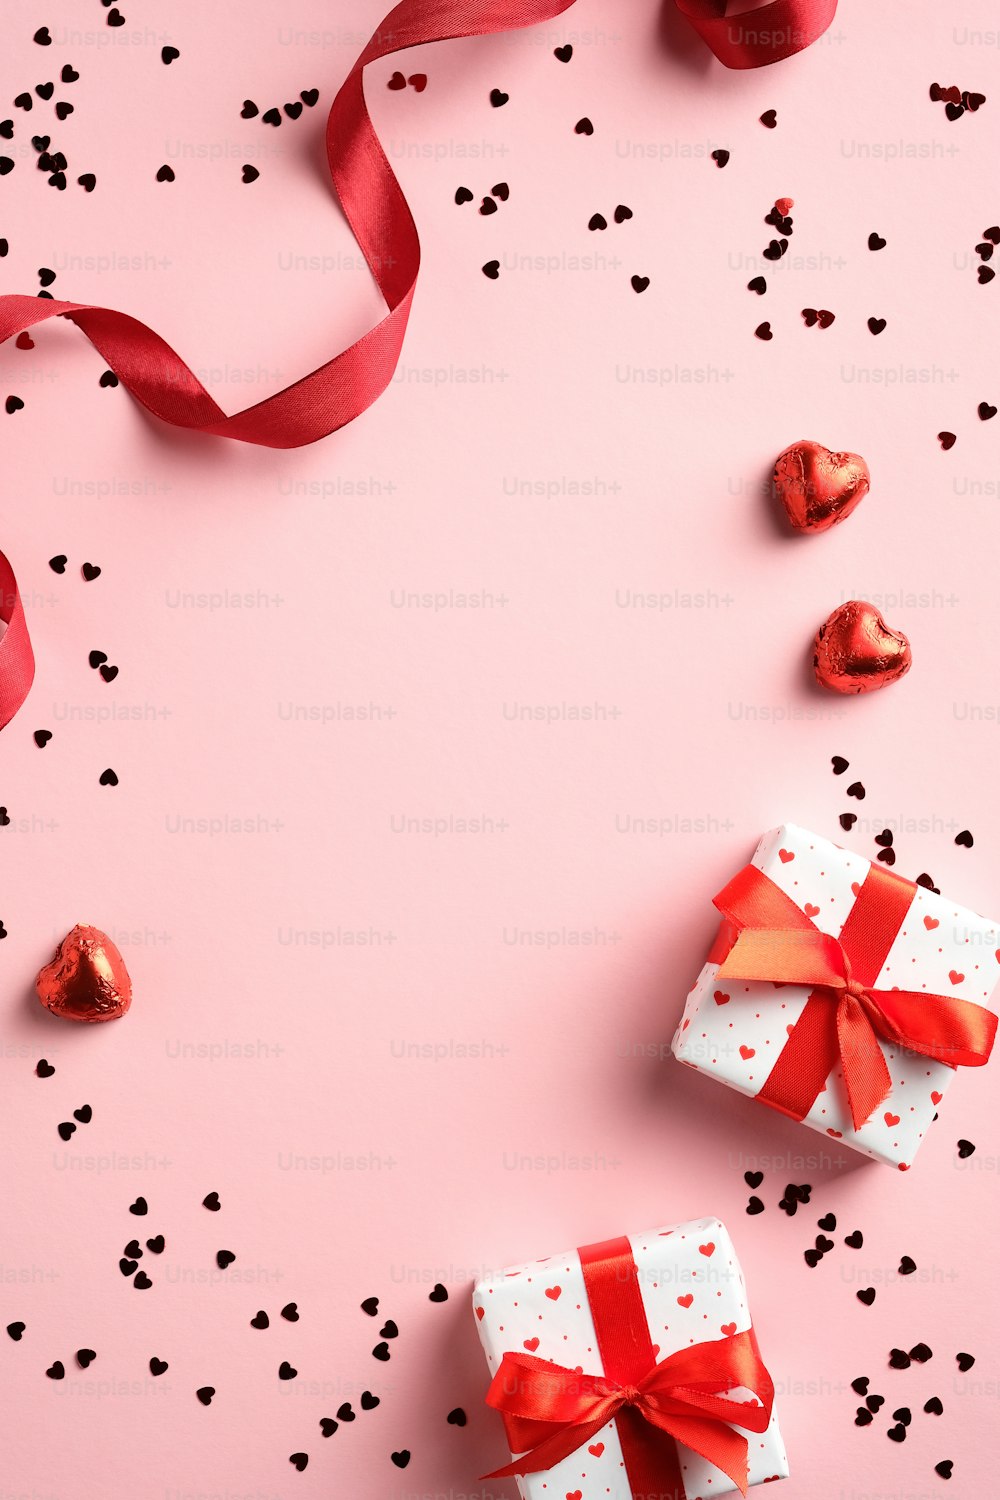 해피 발렌타인 데이 개념입니다. 선물 상자, 빨간 리본, 분홍색 테이블에 색종이가 있는 수직 배너. 평면도, 플랫 레이. 발렌타인 데이 상품권 디자인, 인사말 카드, 소셜 미디어의 스토리 디자인